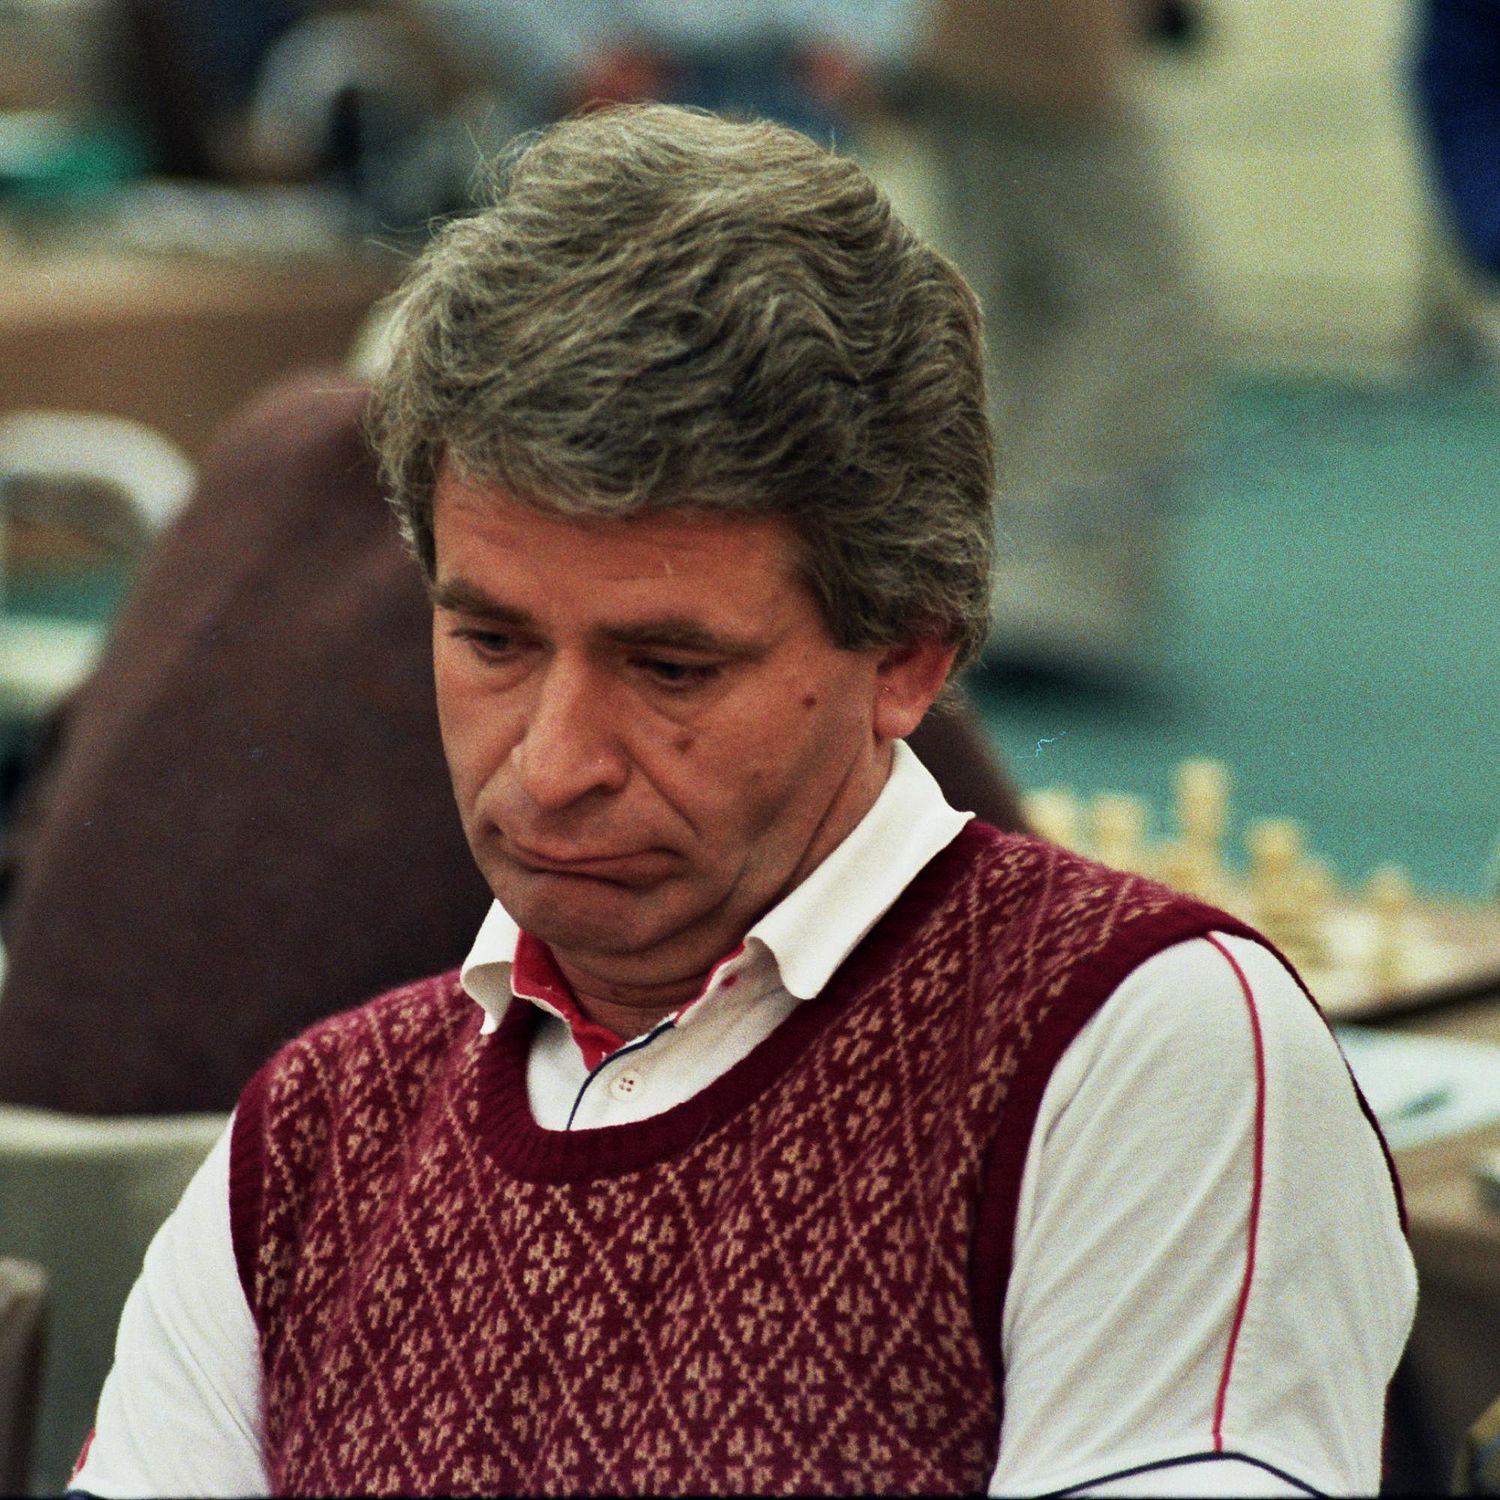 Bobby Fischer - Wikiwand